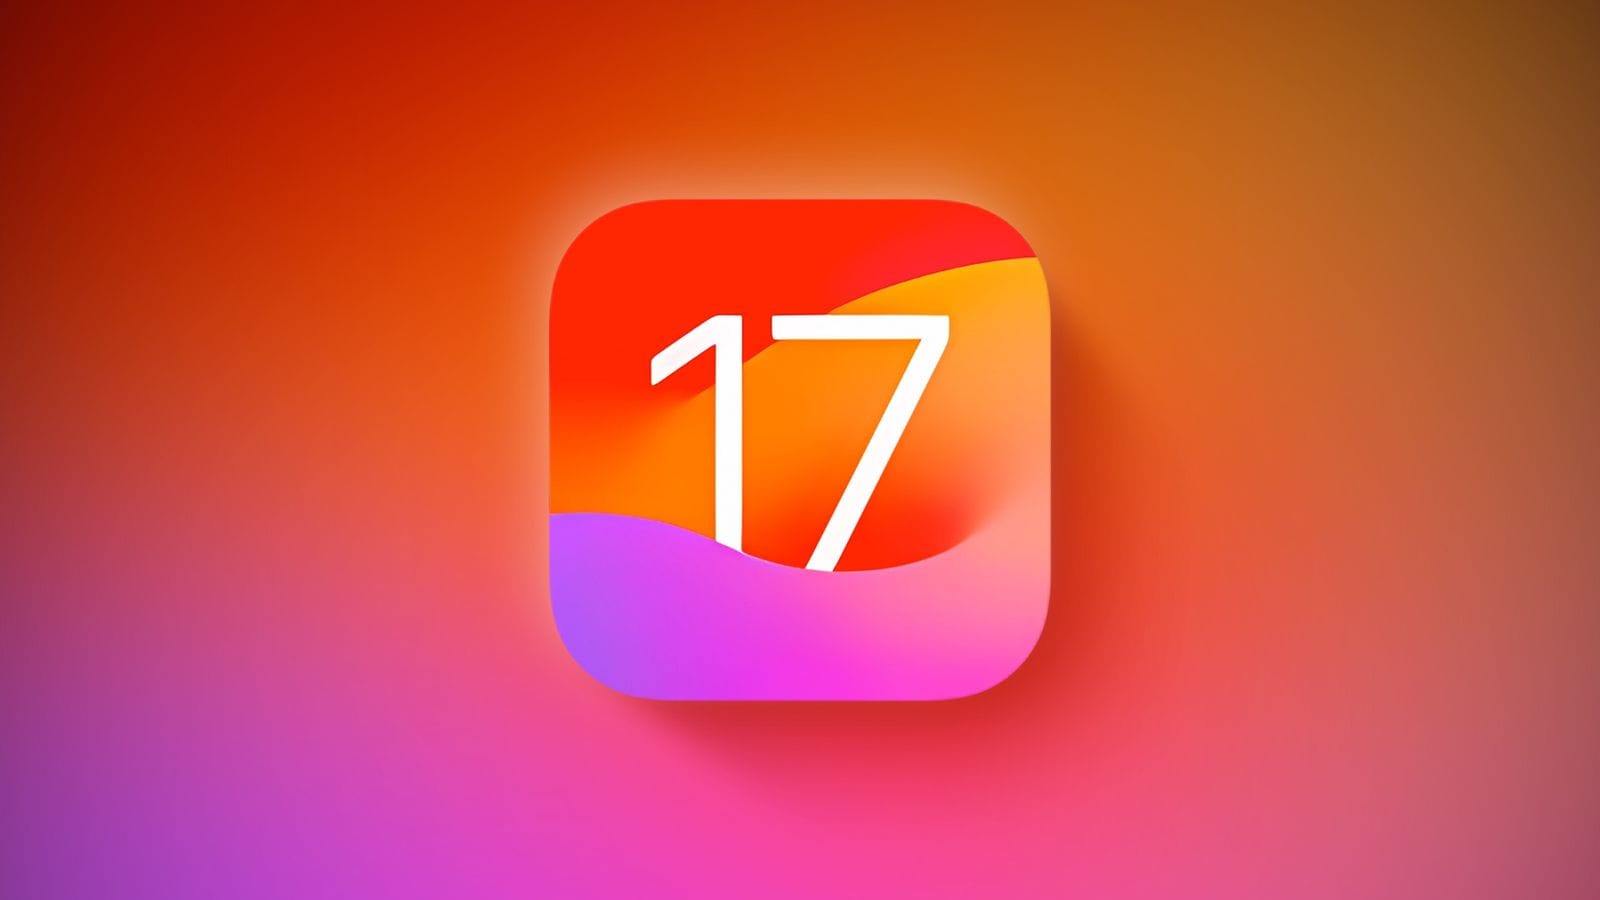 Распространение iOS 17 проходит медленнее, чем iOS 16